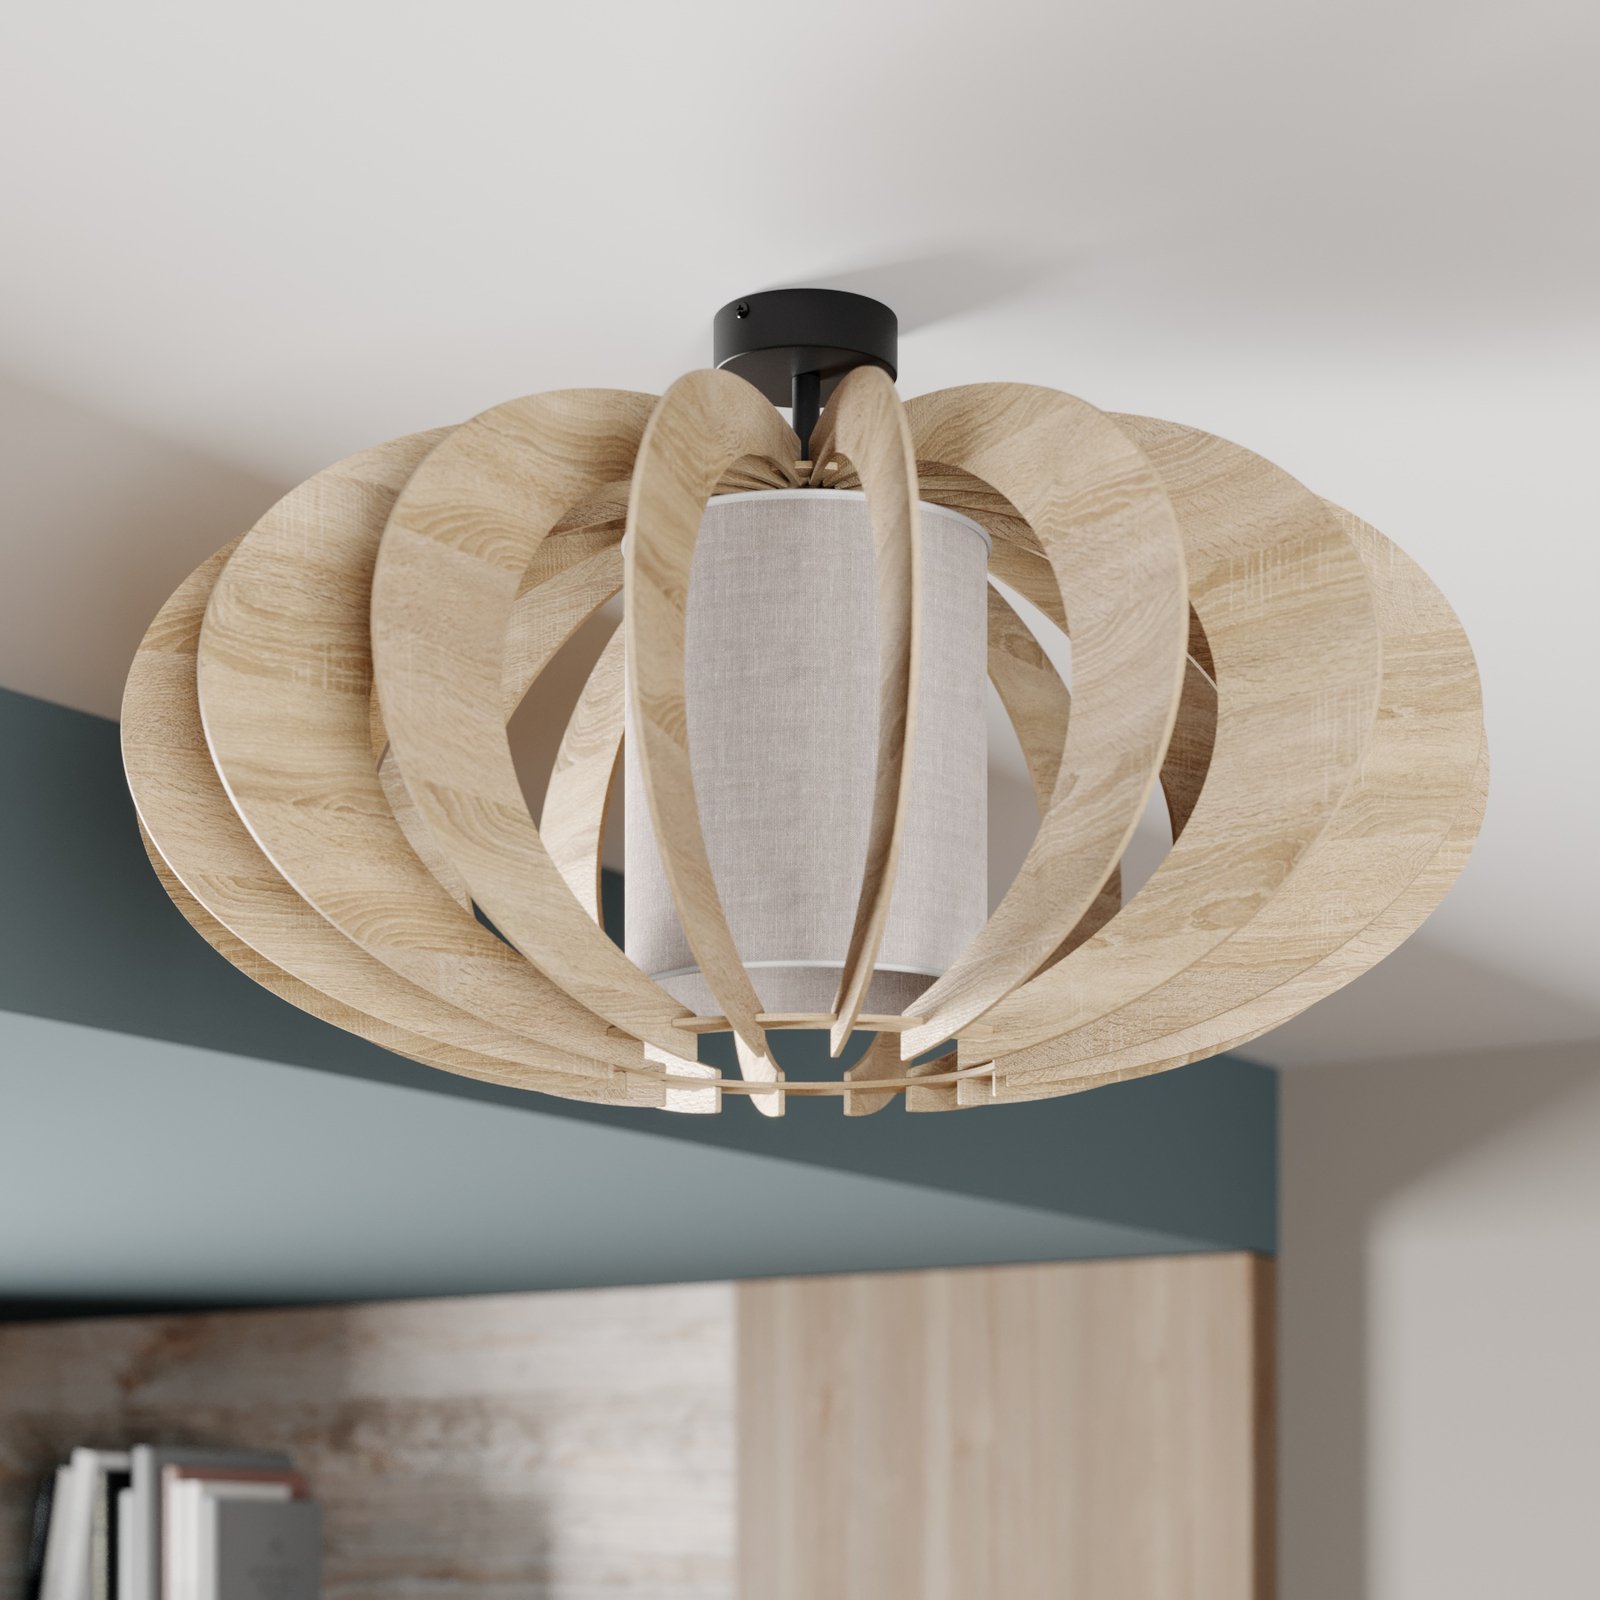 Tegenover conjunctie vandaag Plafondlamp modern A met houten lamellen, Ø 60 cm | Lampen24.be